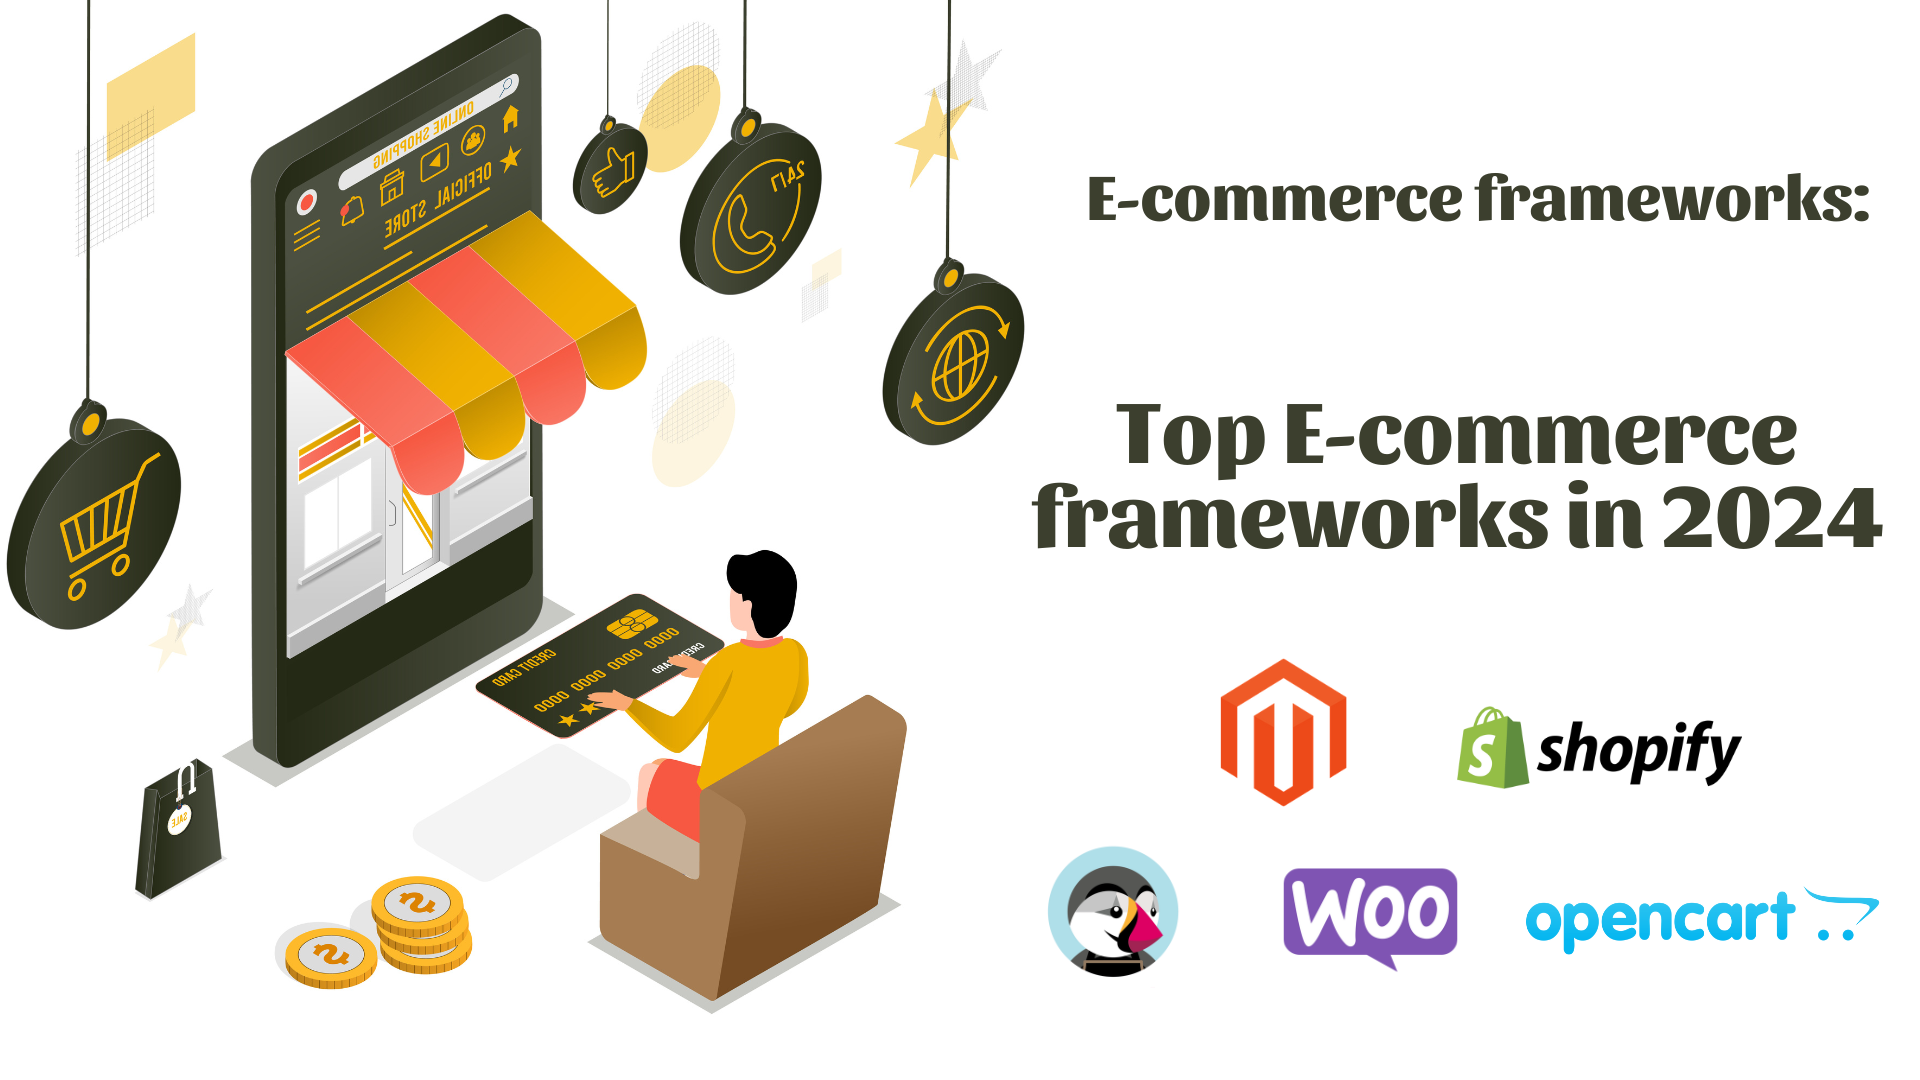 E-commerce frameworks: Top E-commerce frameworks in 2024